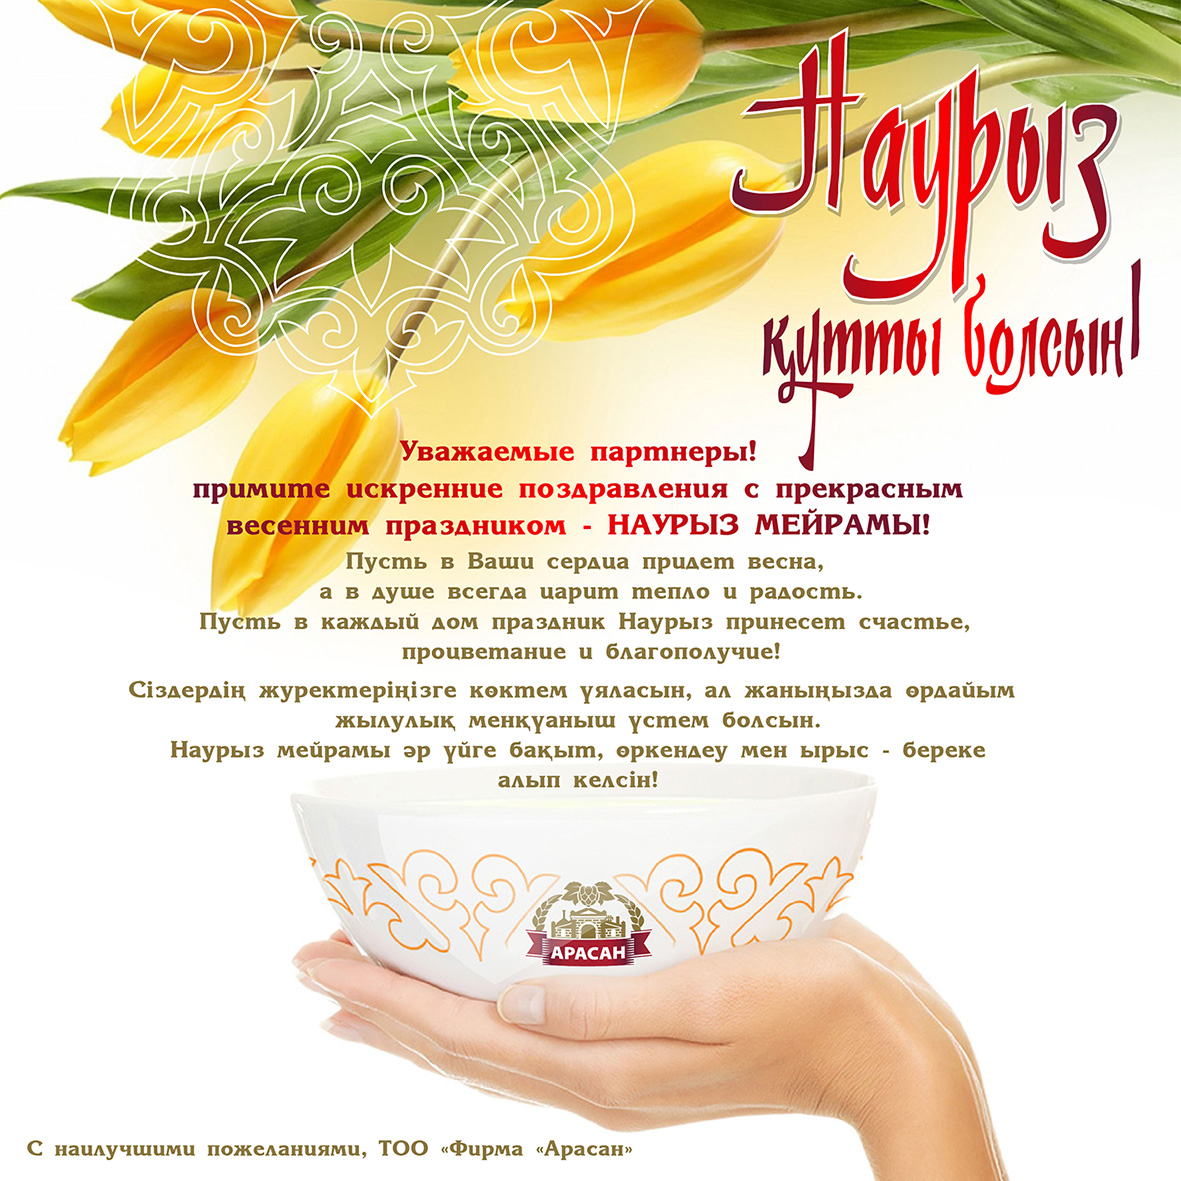 Поздравление с наурызом на русском своими словами. Поздравление с наурузлм. Наурыз открытки. Поздравление гэнаурыз. Наурыз открытки с поздравлениями.